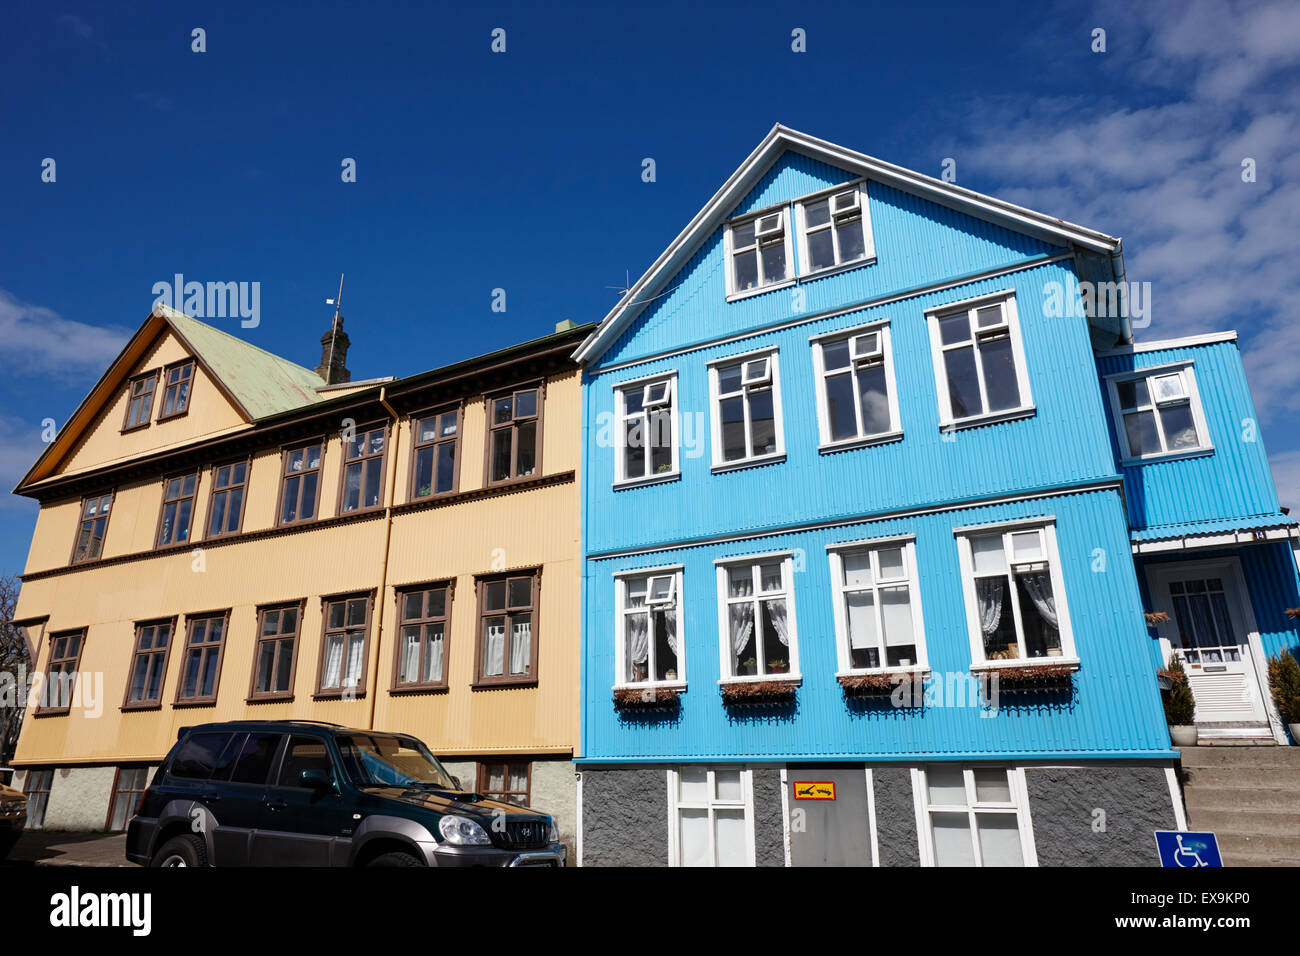 multi storey brightly painted corrugated iron clad buildings reykjavik iceland Stock Photo